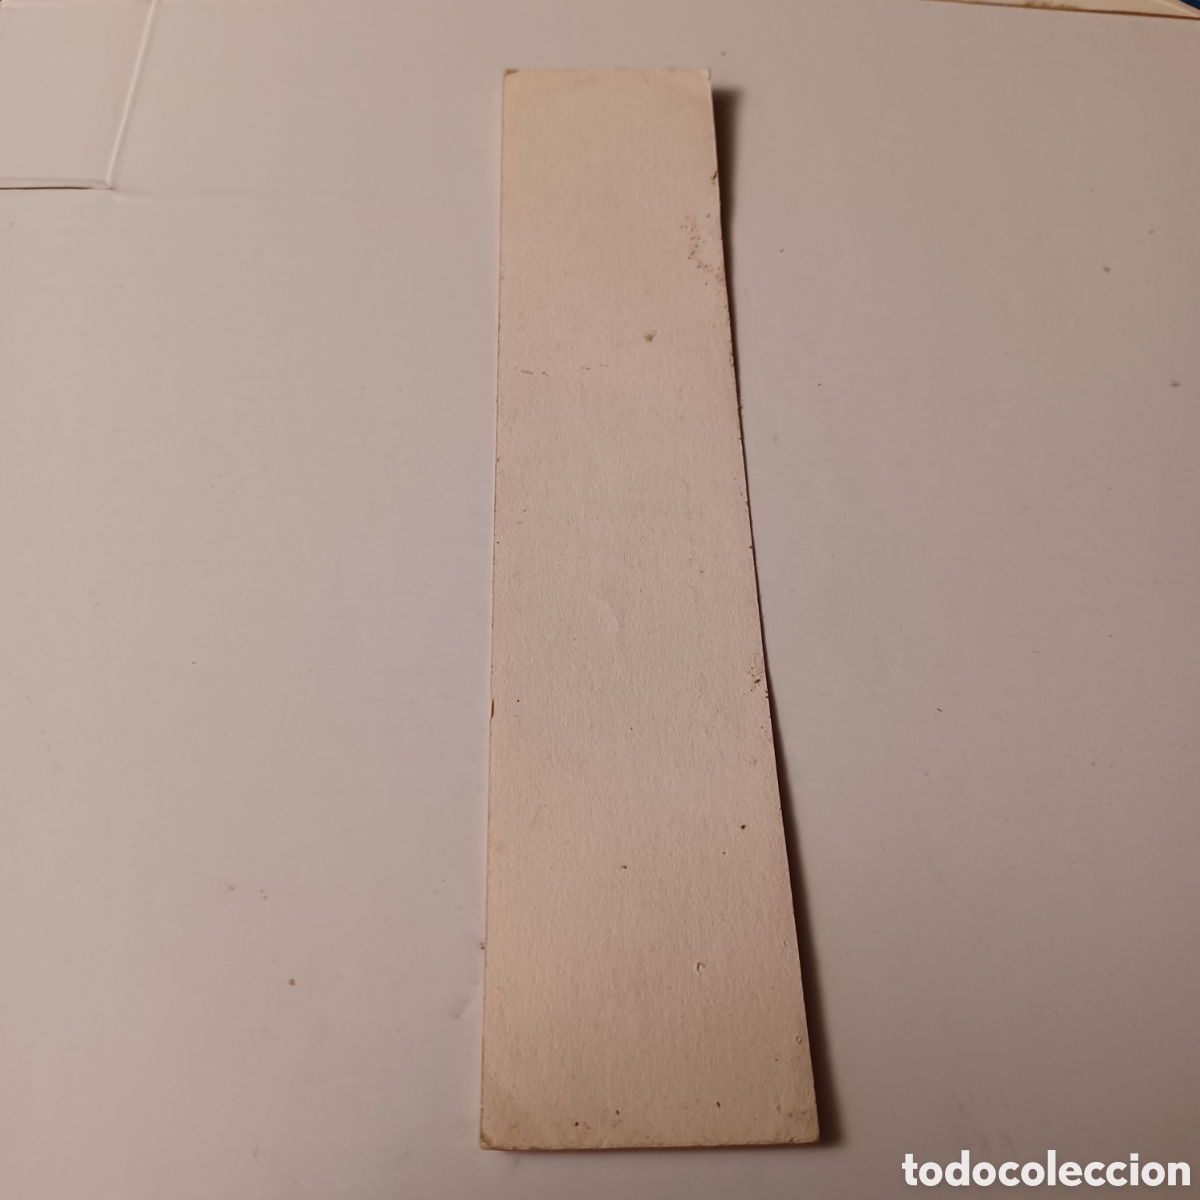 pegatina adhesivo etiqueta años 80 iberia equip - Compra todocoleccion